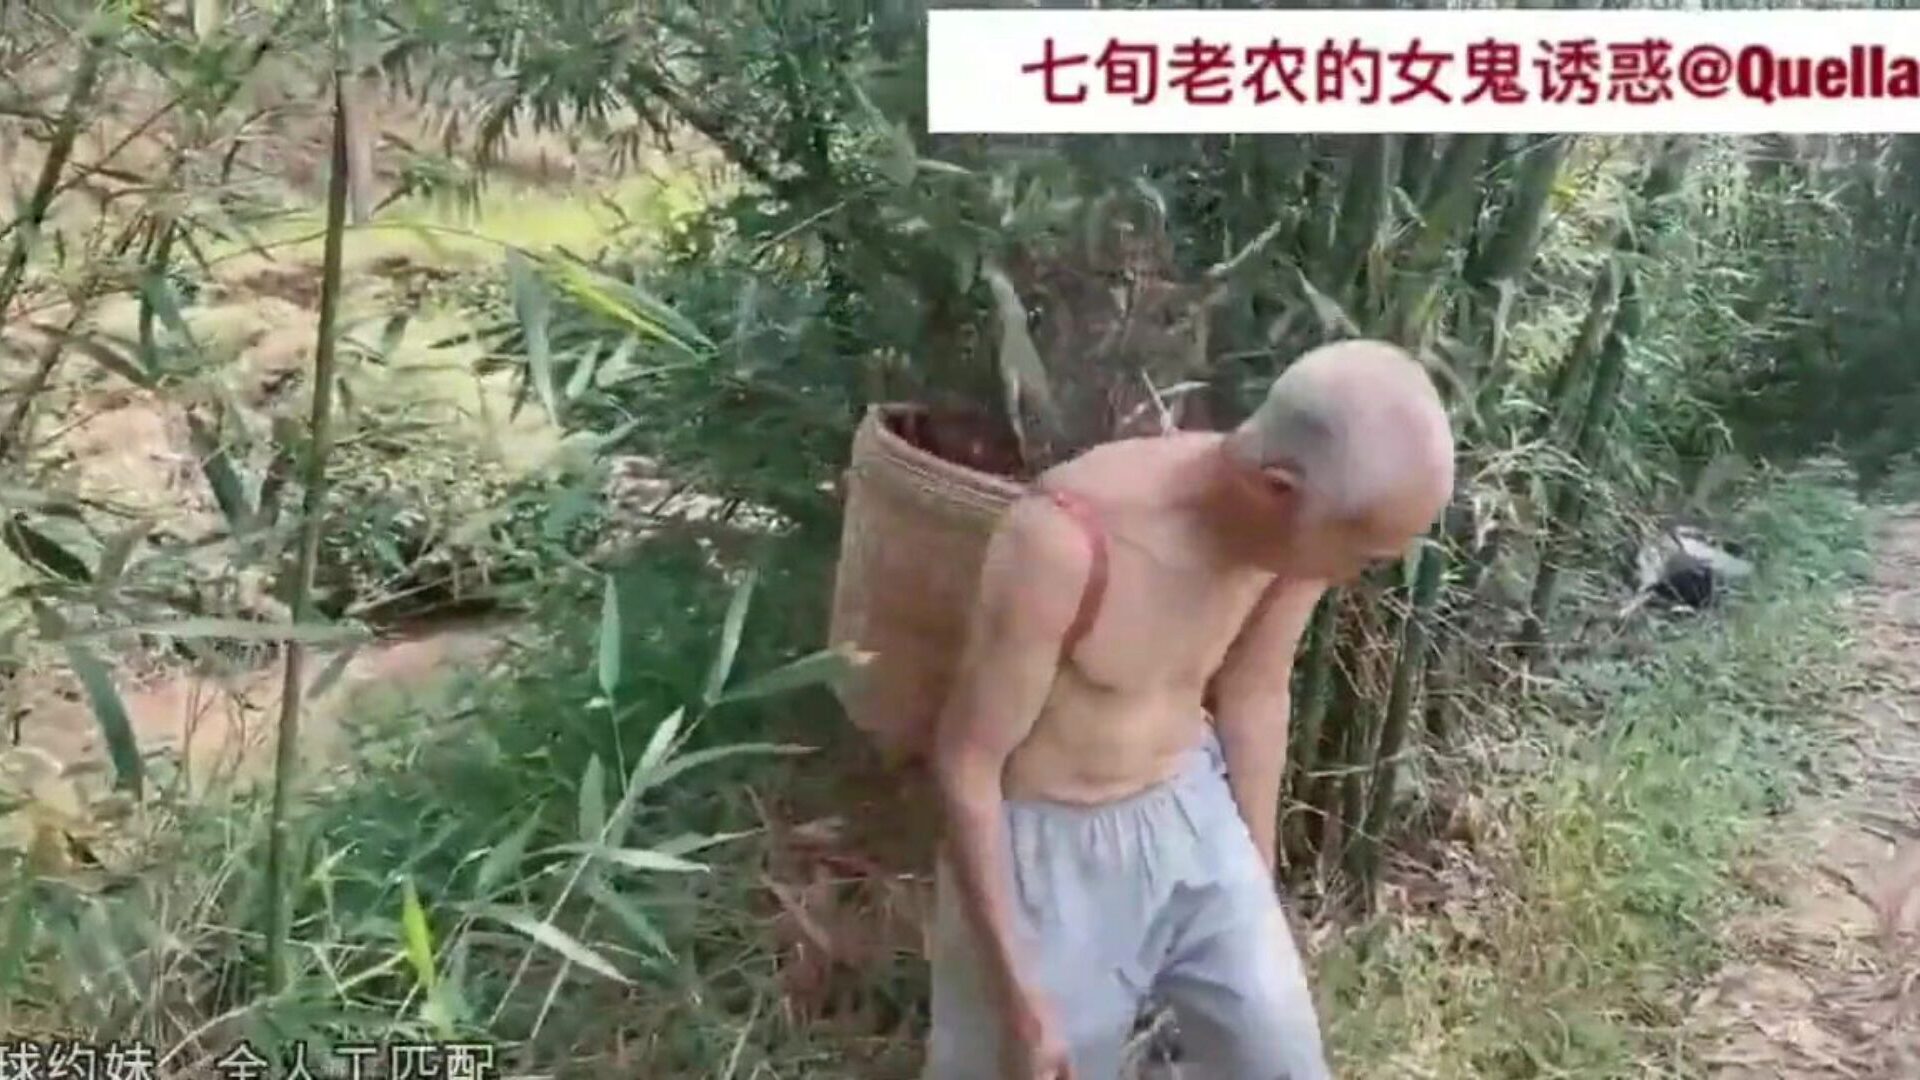 περιπέτεια των ηλικιωμένων κινεζικών av70, hd porn 22: xhamster ρολόι περιπέτειας των ηλικιωμένων κινεζικών av70 επεισόδιο στο xhamster, ο τεράστιος ιστότοπος hd romp tube με τόνους δωρεάν ασιατικές κινέζικες xxx & παλιές ασιατικές ταινίες πορνογραφίας